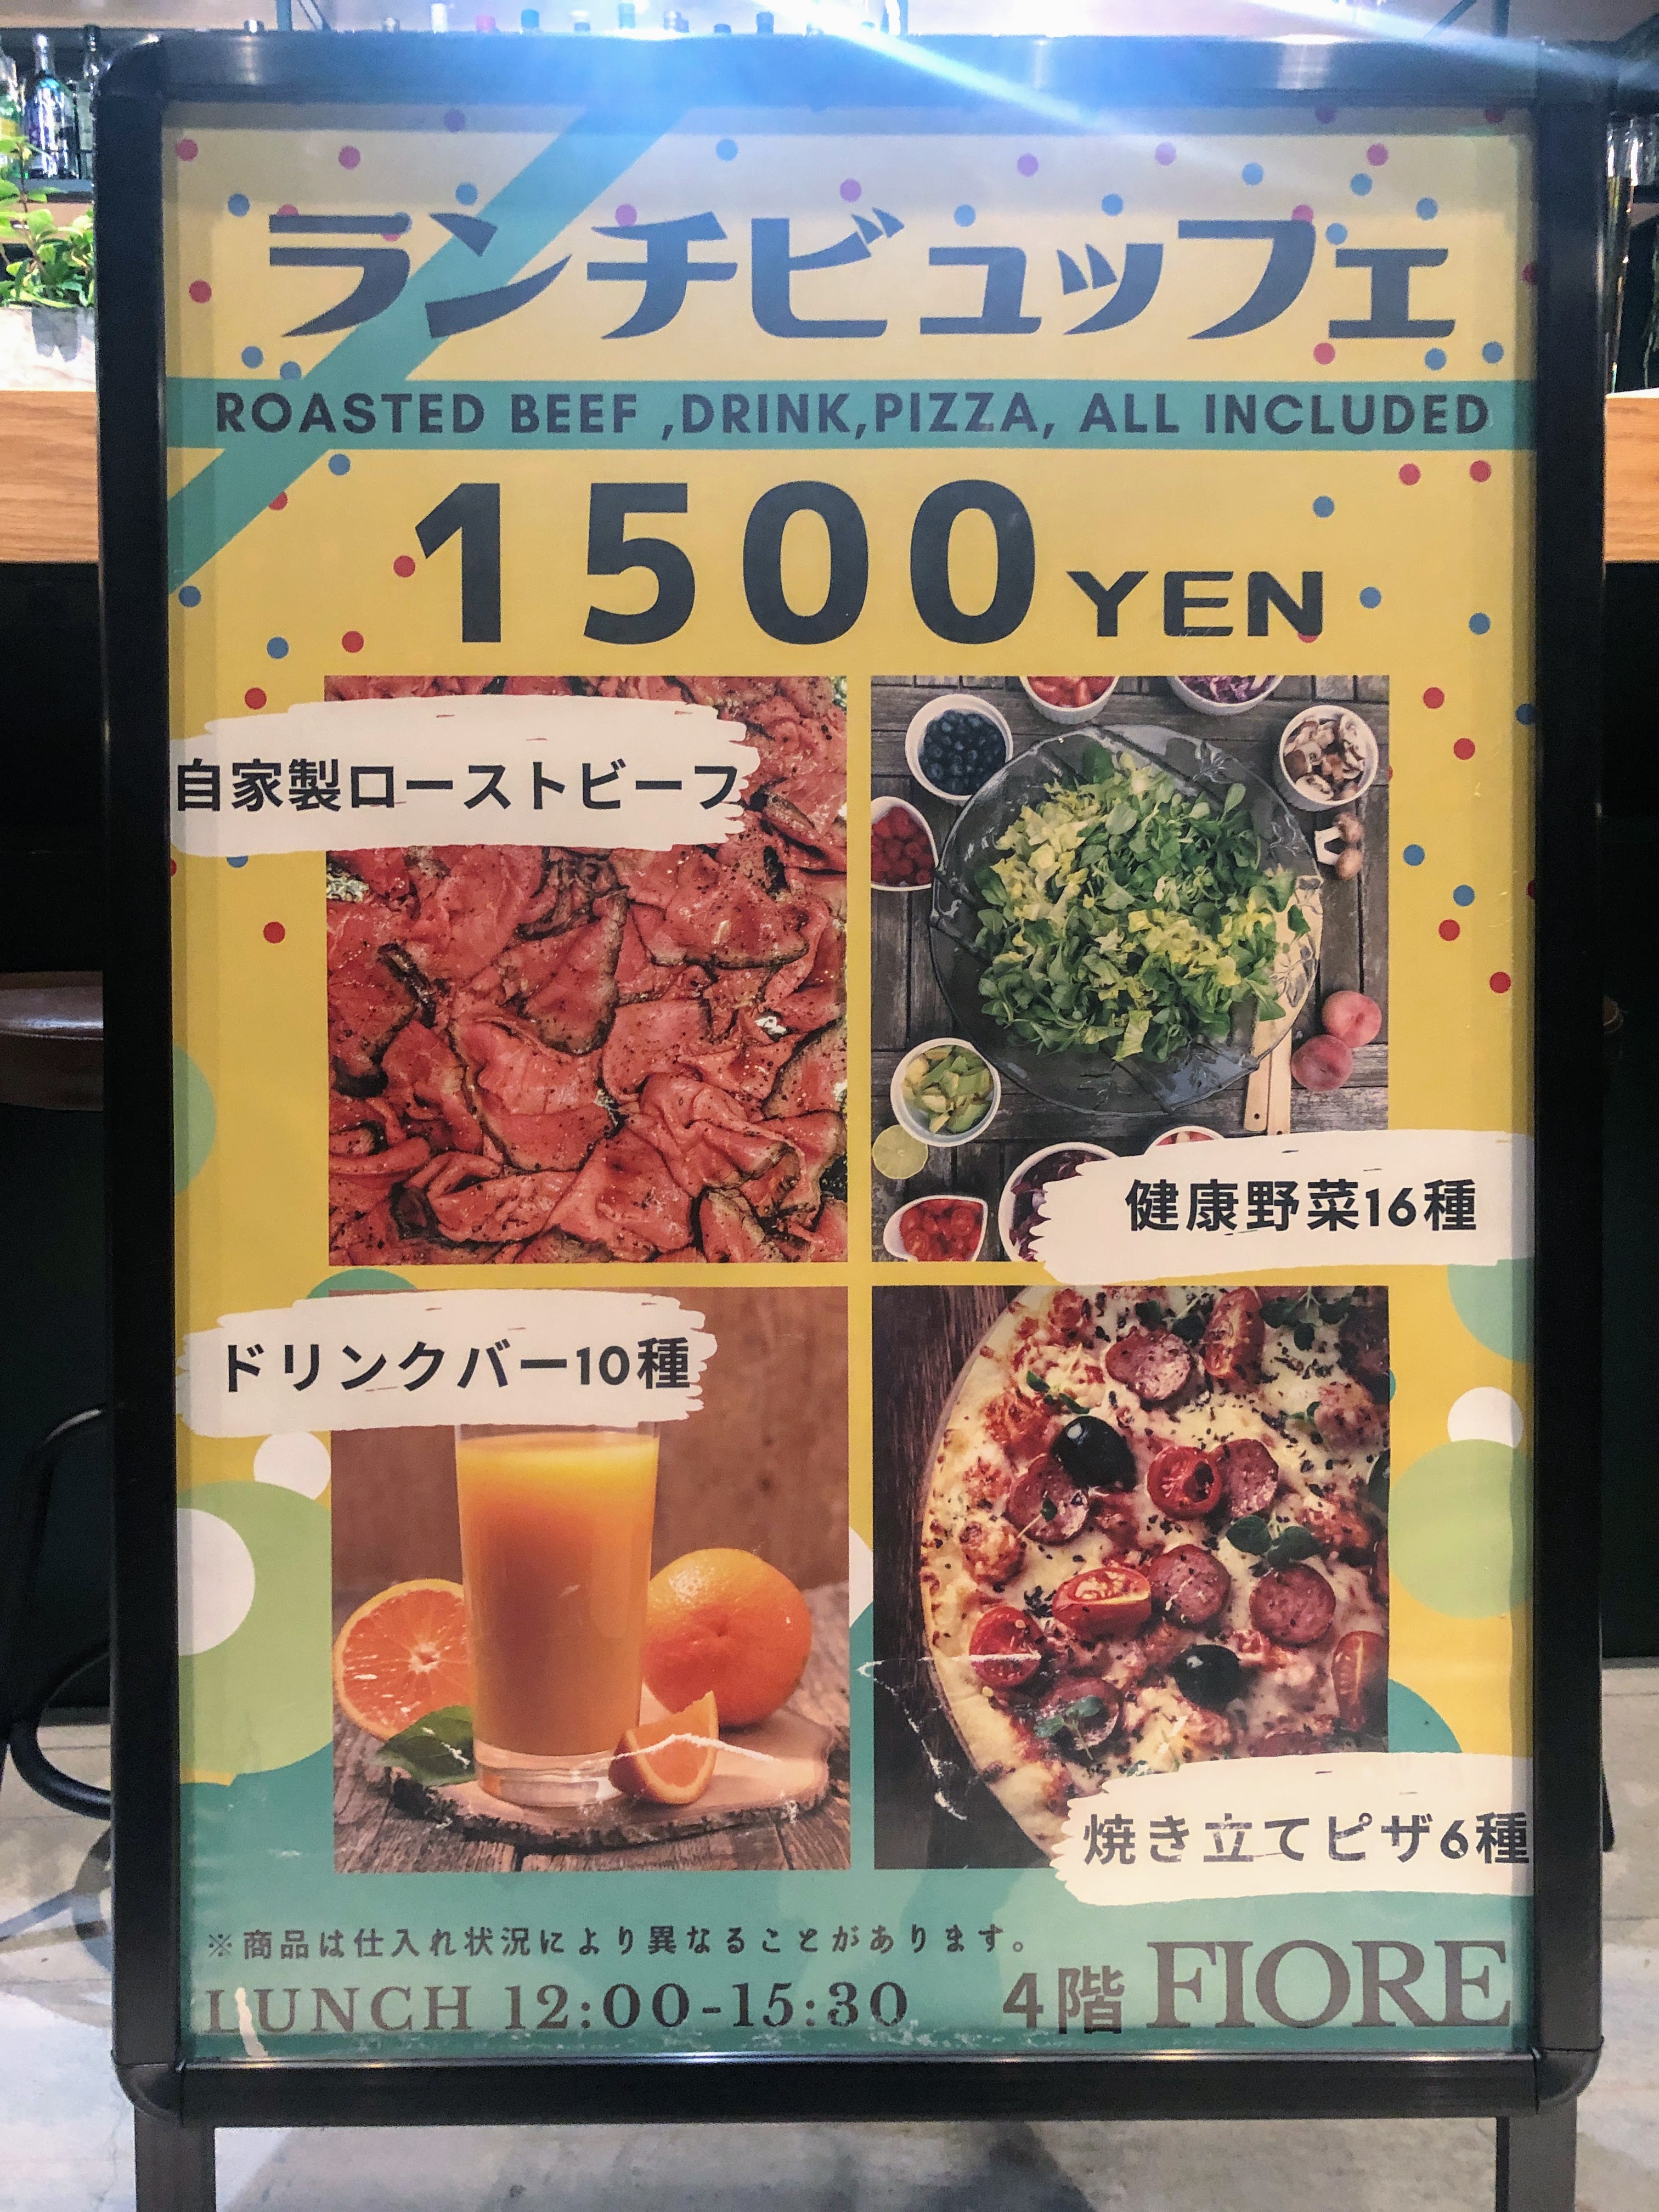 渋谷ピザ食べ放題 渋谷でピザを食べ放題できる3店舗 ソルト渋谷